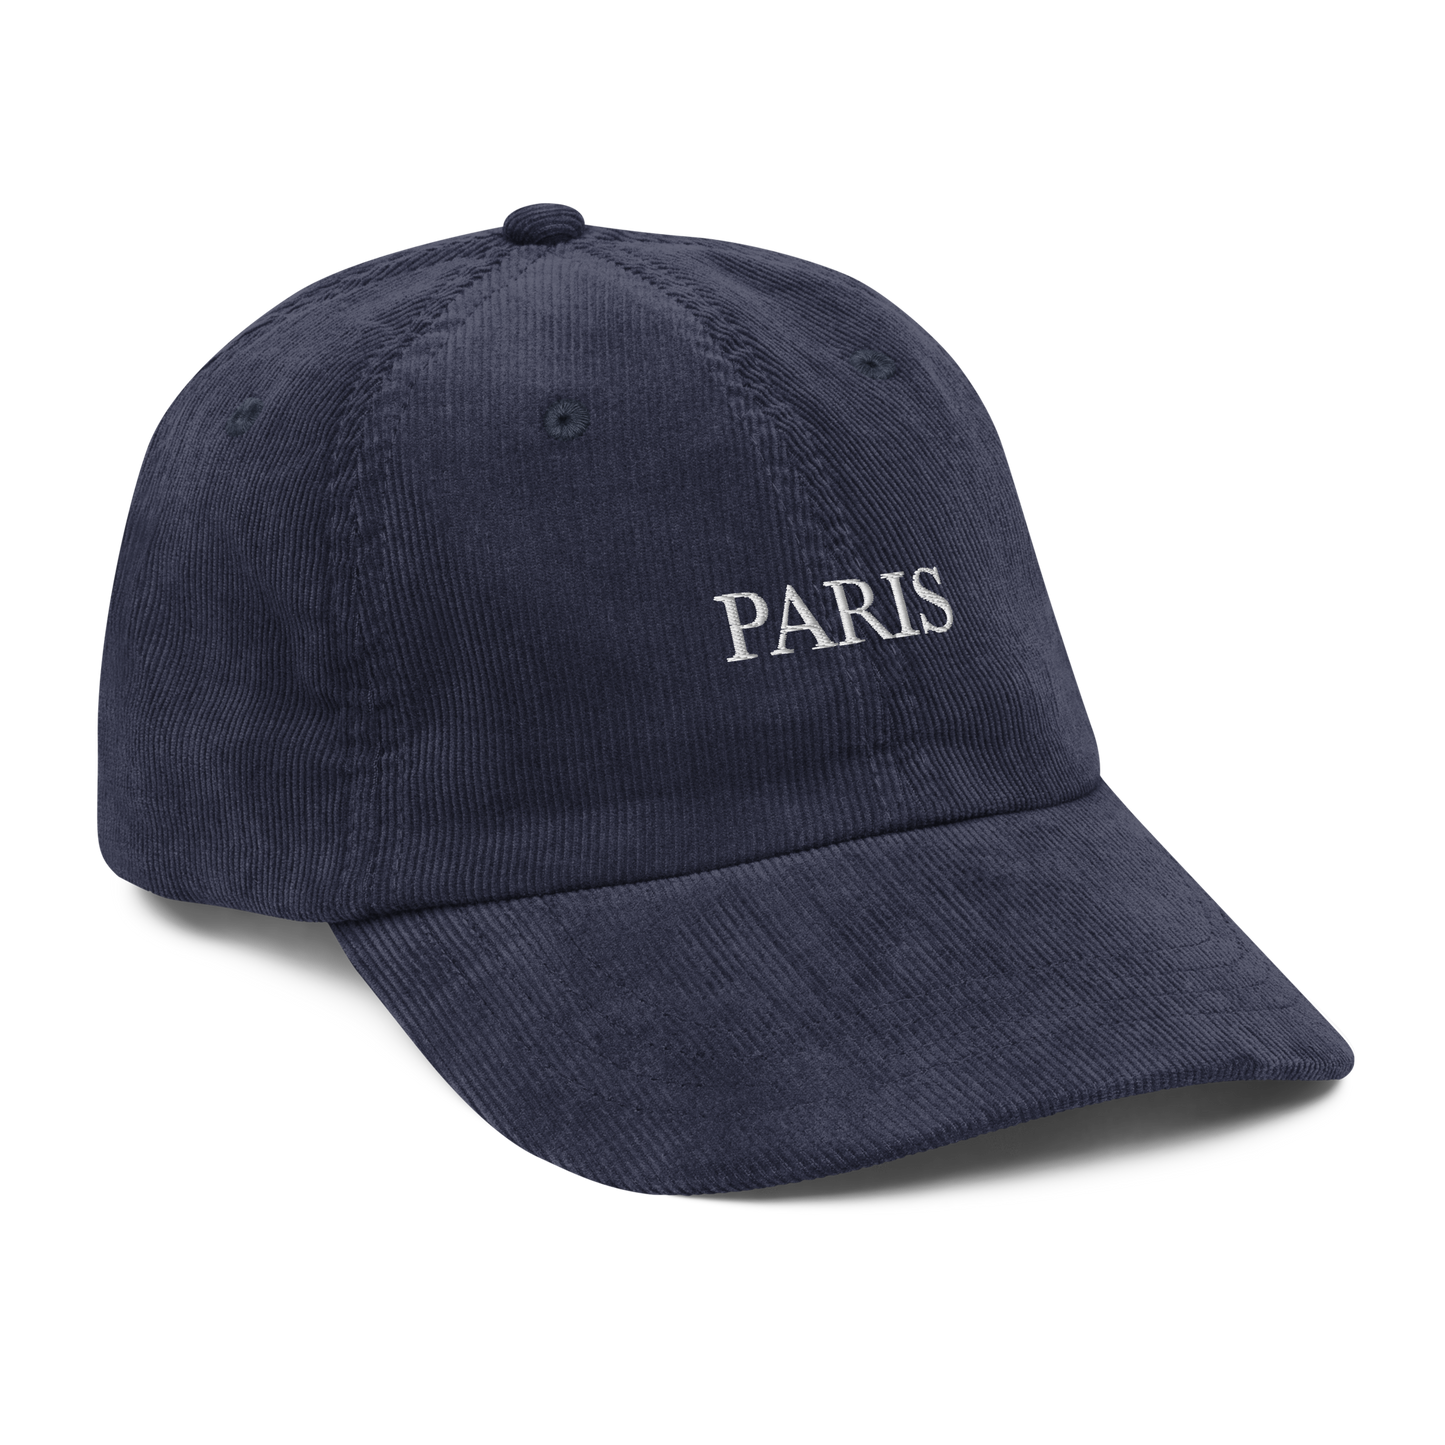 Paris Corduroy Hat